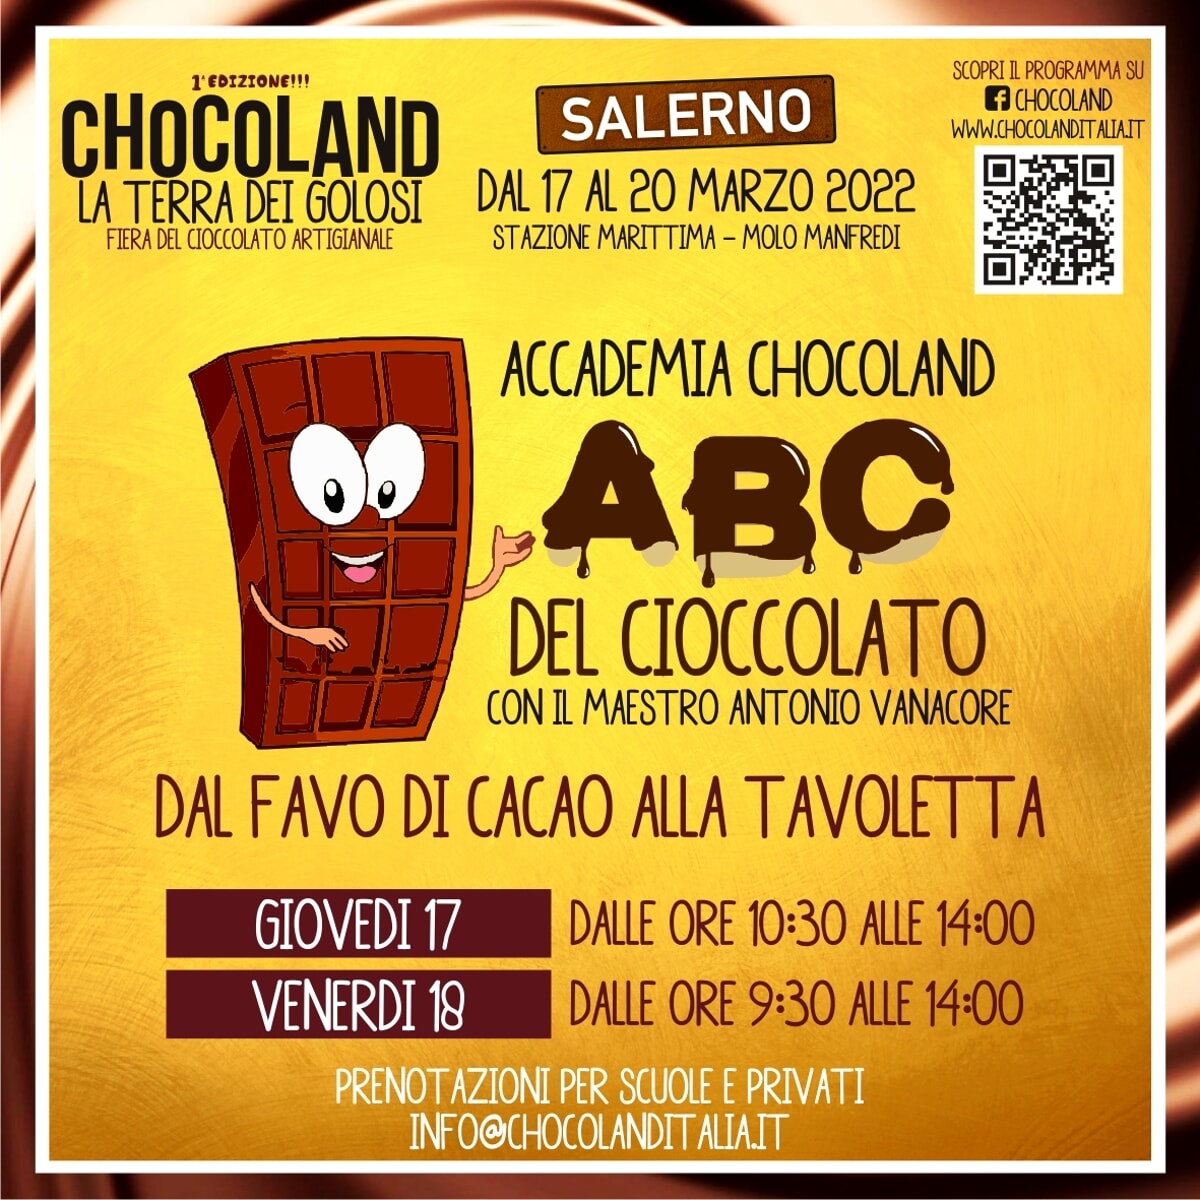 Salerno città da gustare con “Chocoland, la terra dei golosi”